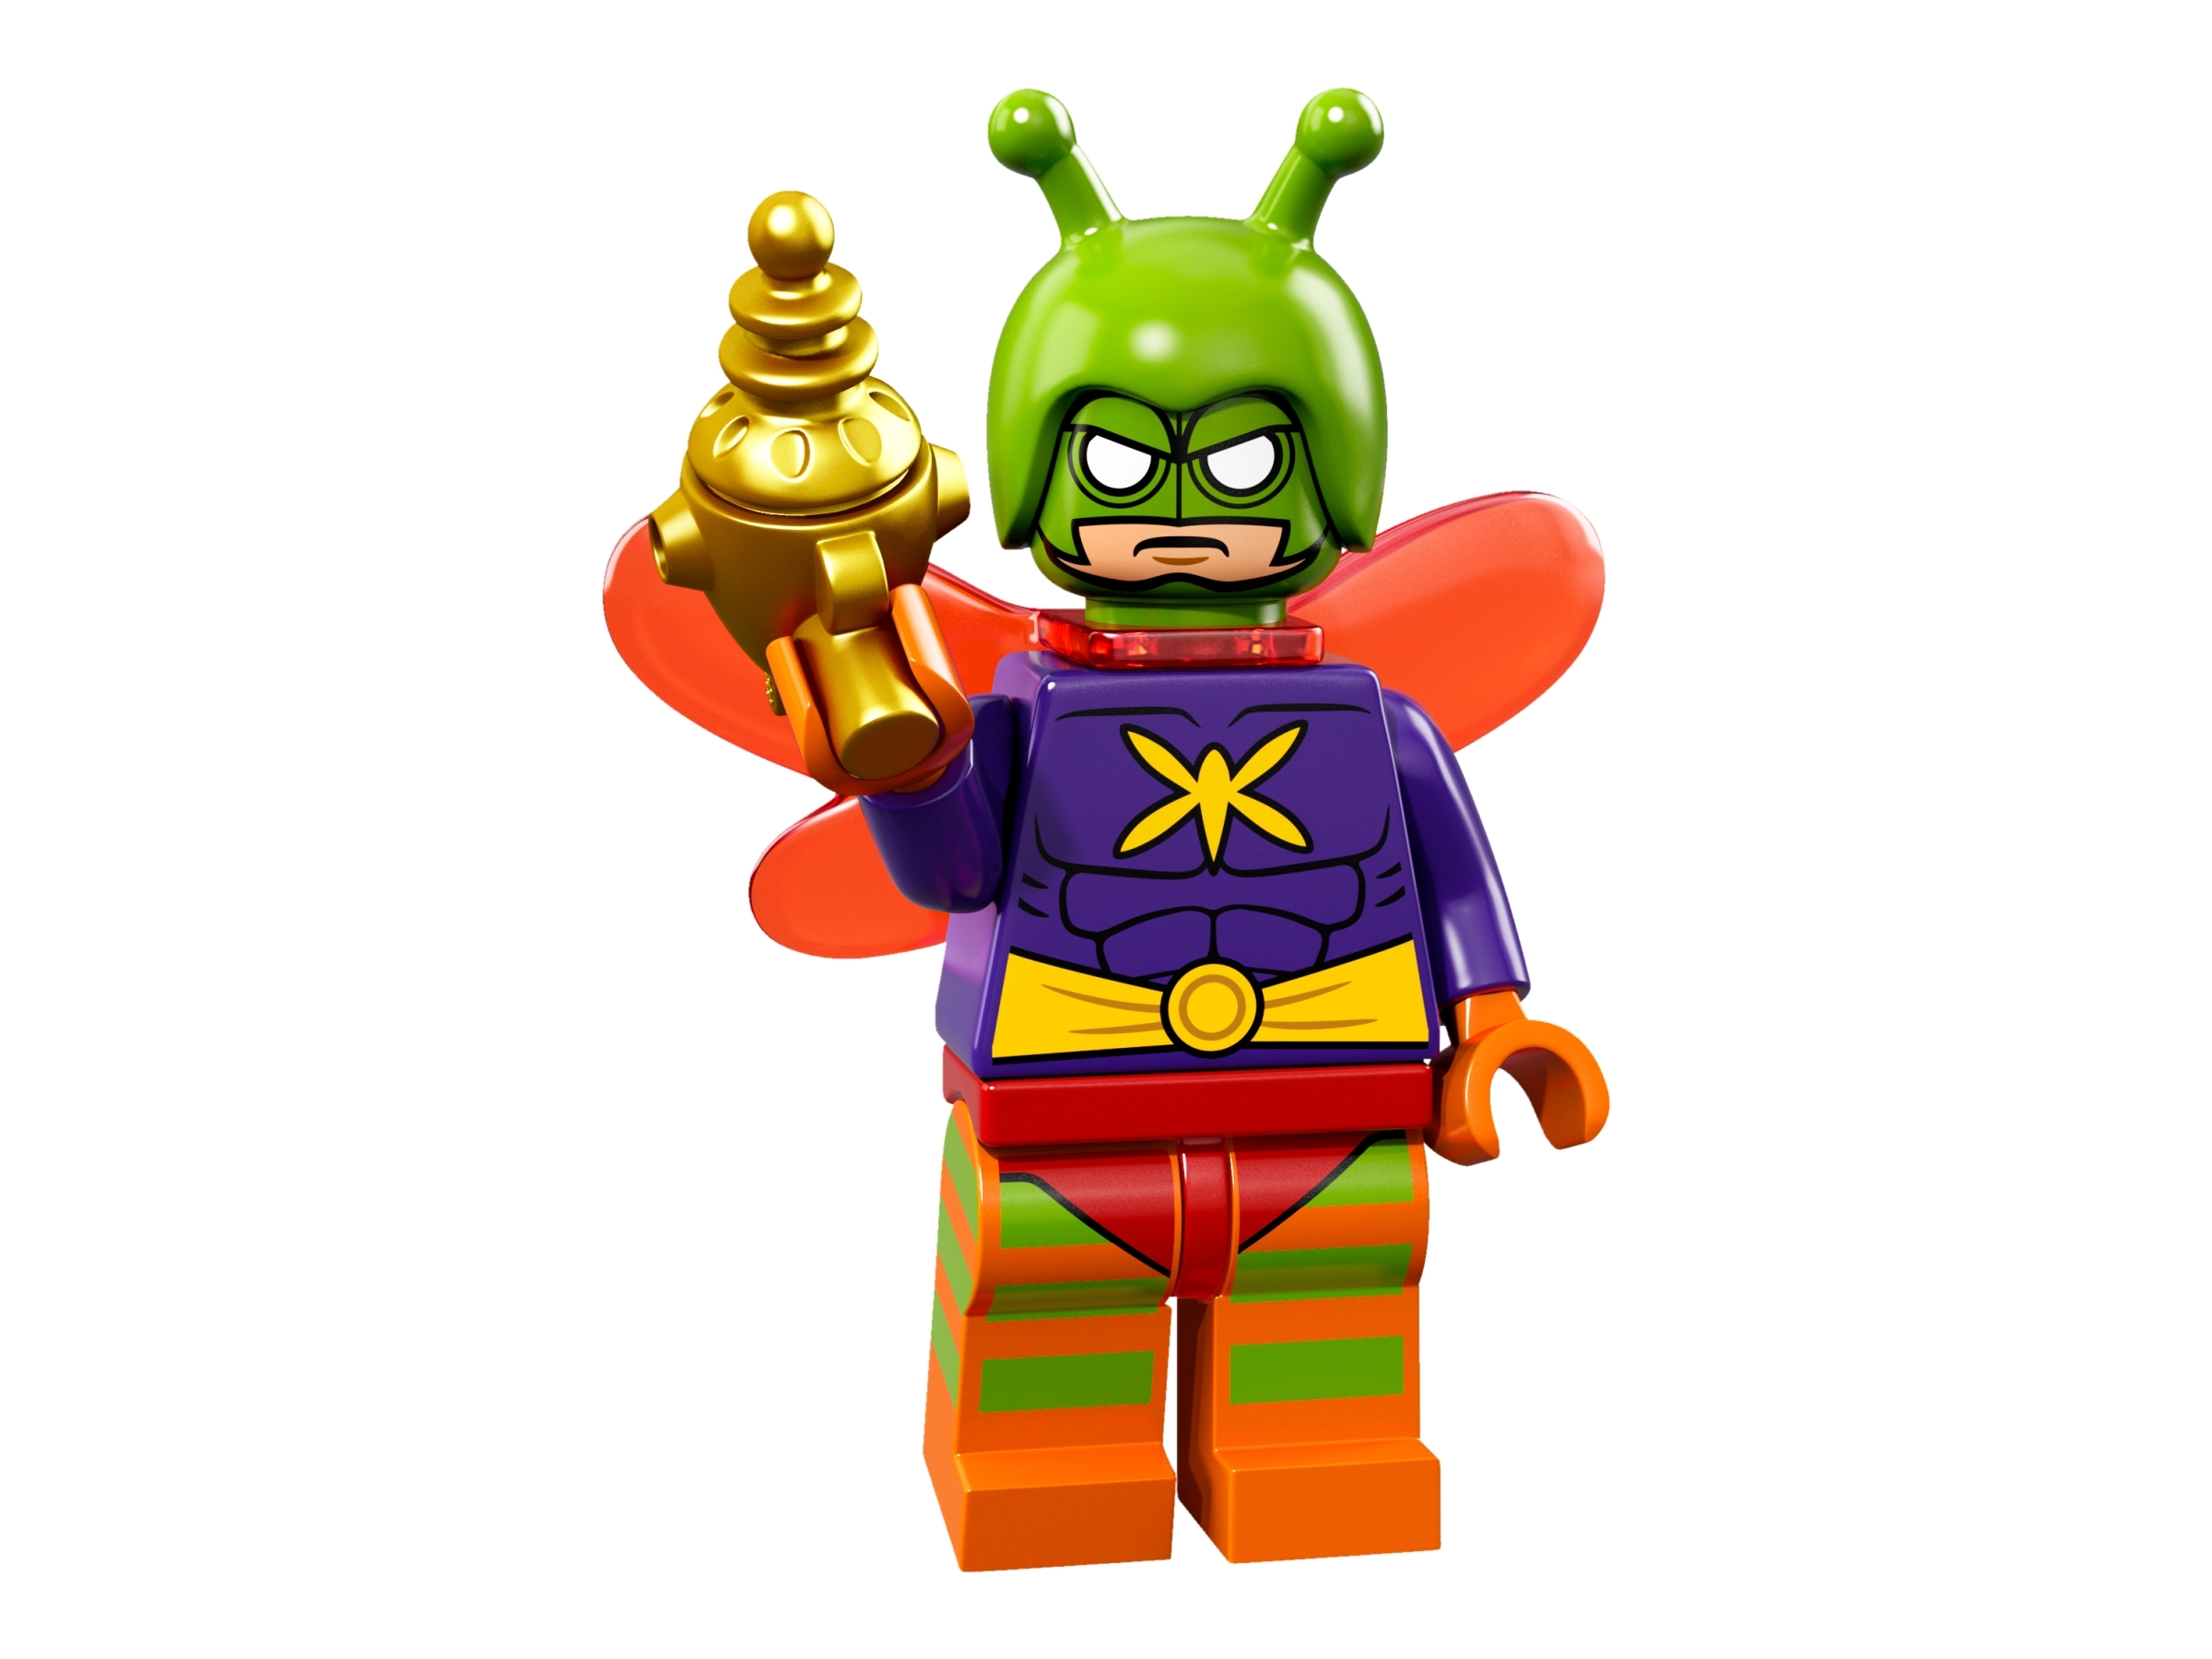 lego batman movie minifigures complete set